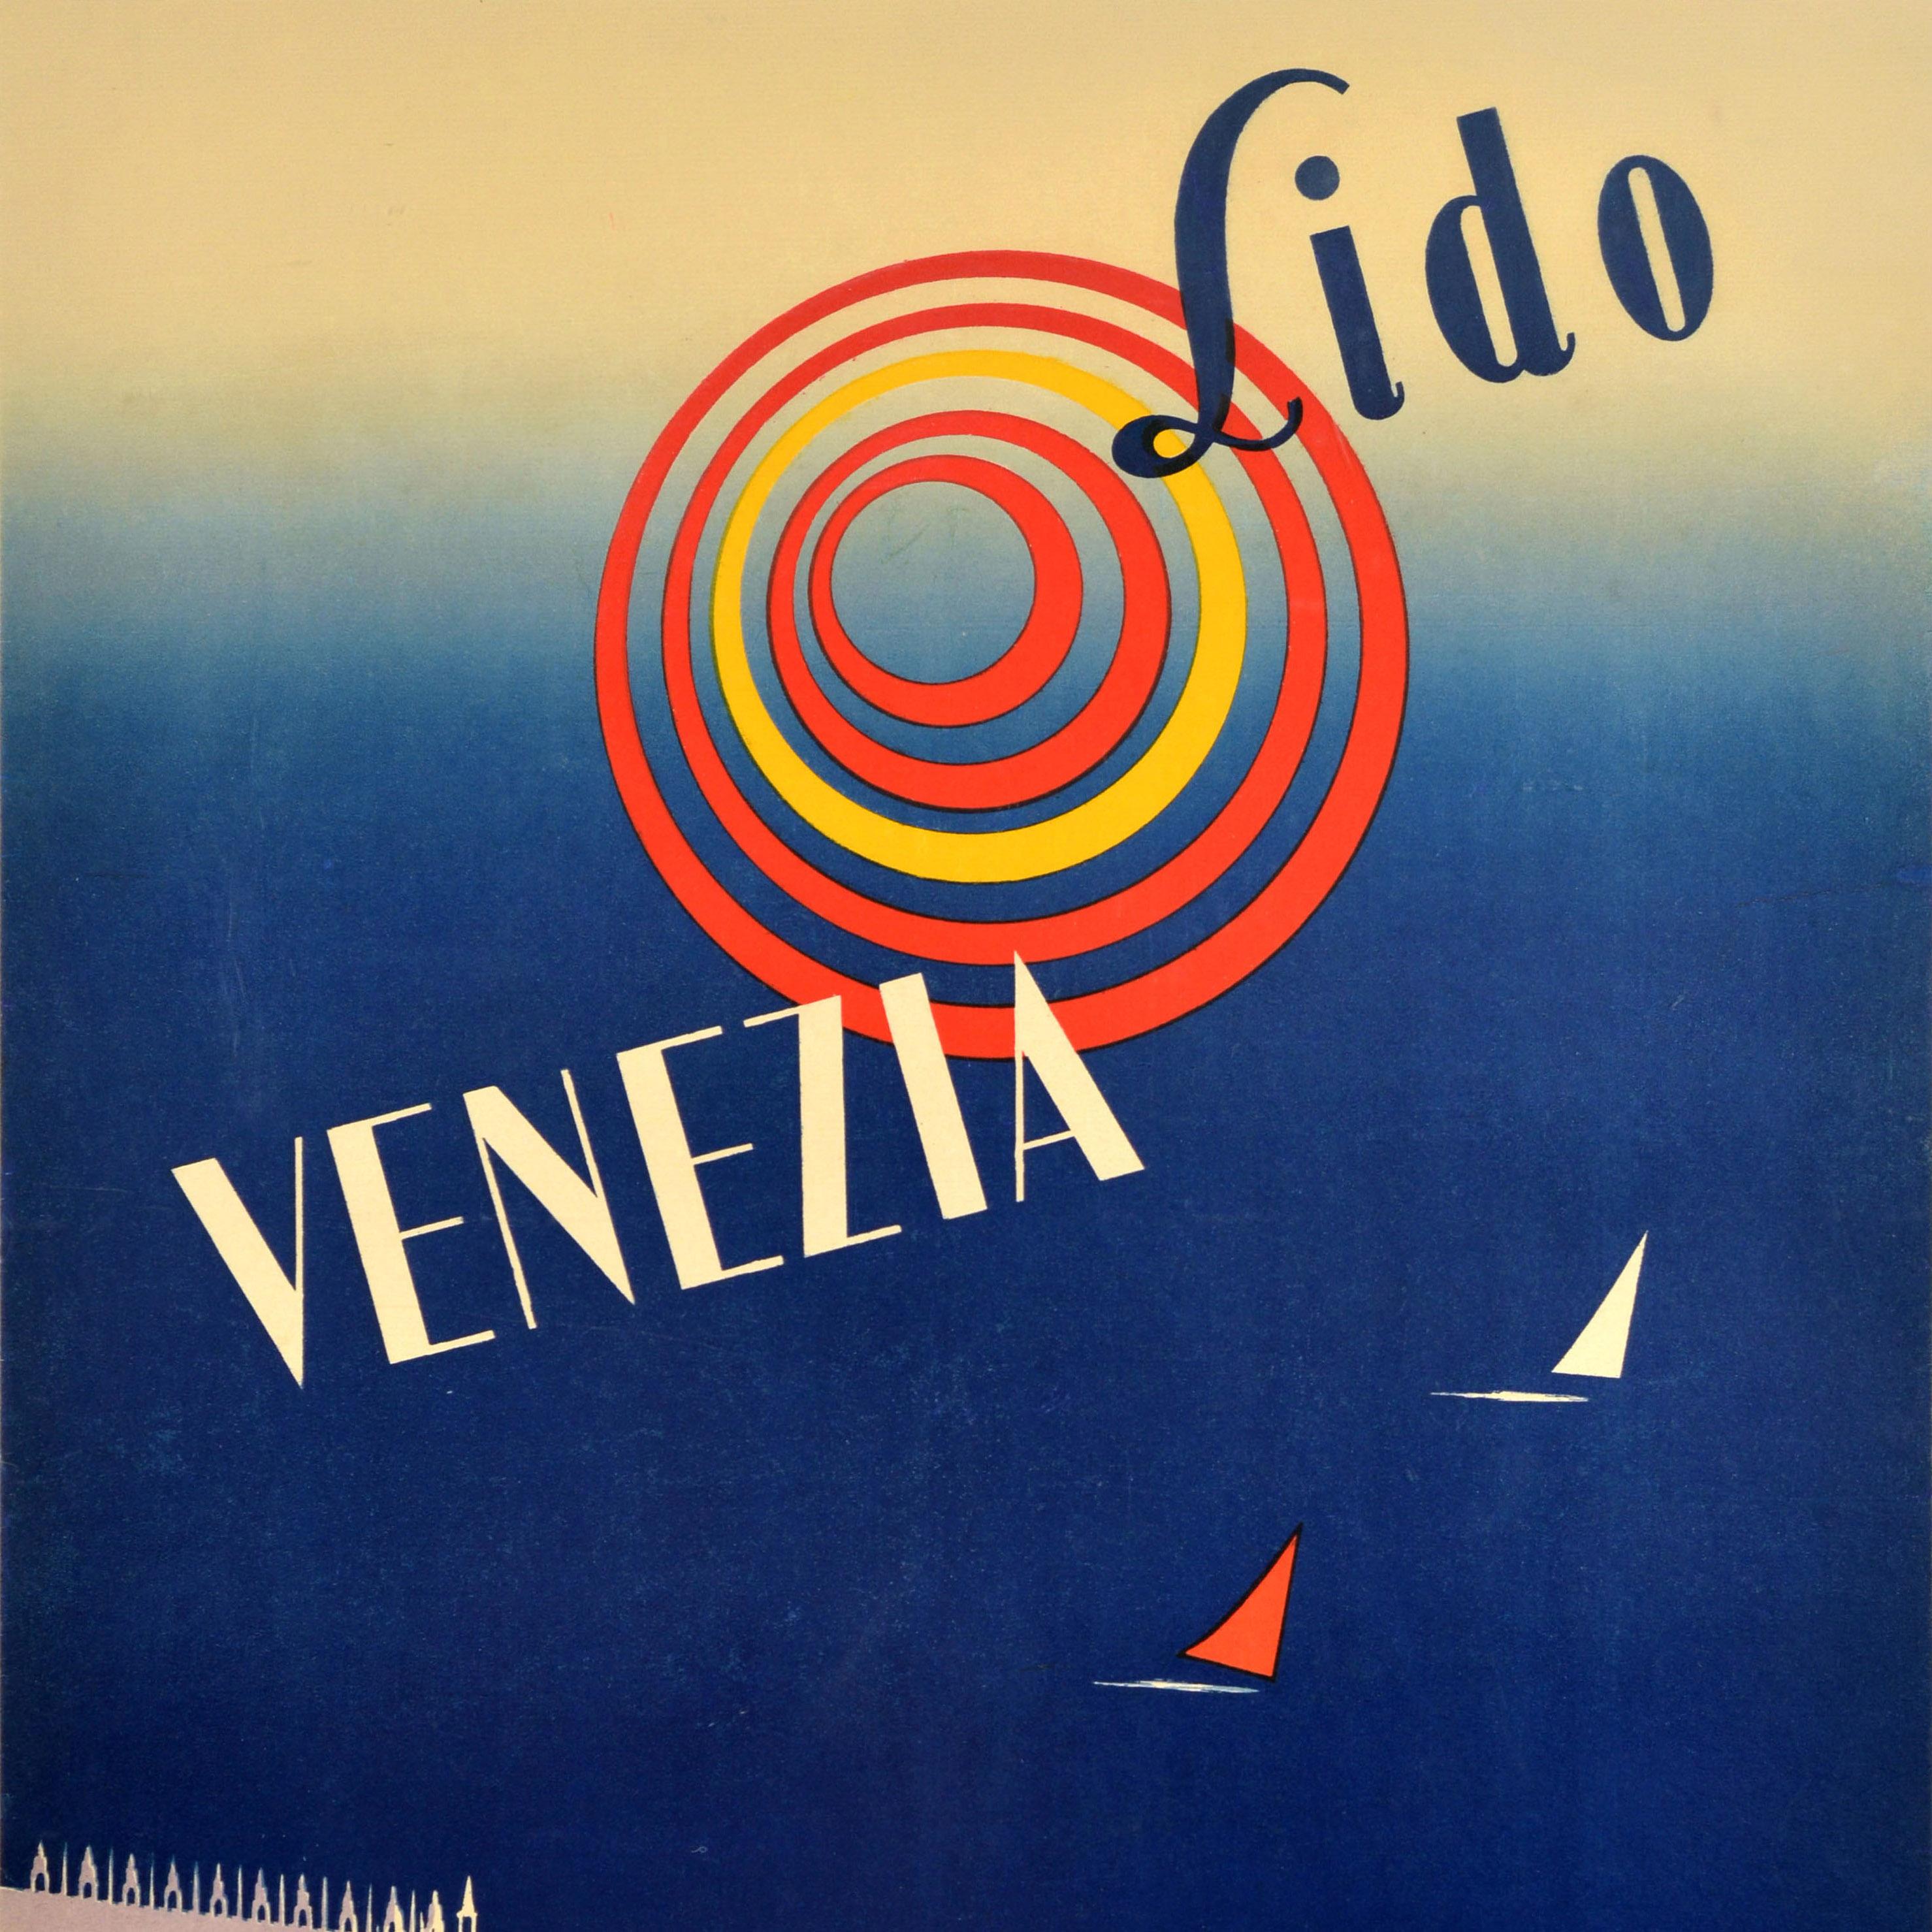 Original Vintage-Reiseplakat für Venedig Italien - Lido Venezia - mit einem großartigen Design aus der Mitte des Jahrhunderts, das einen Blick auf die historische Piazza San Marco / Markusplatz und den Löwen von Venedig und die Statuen des Heiligen